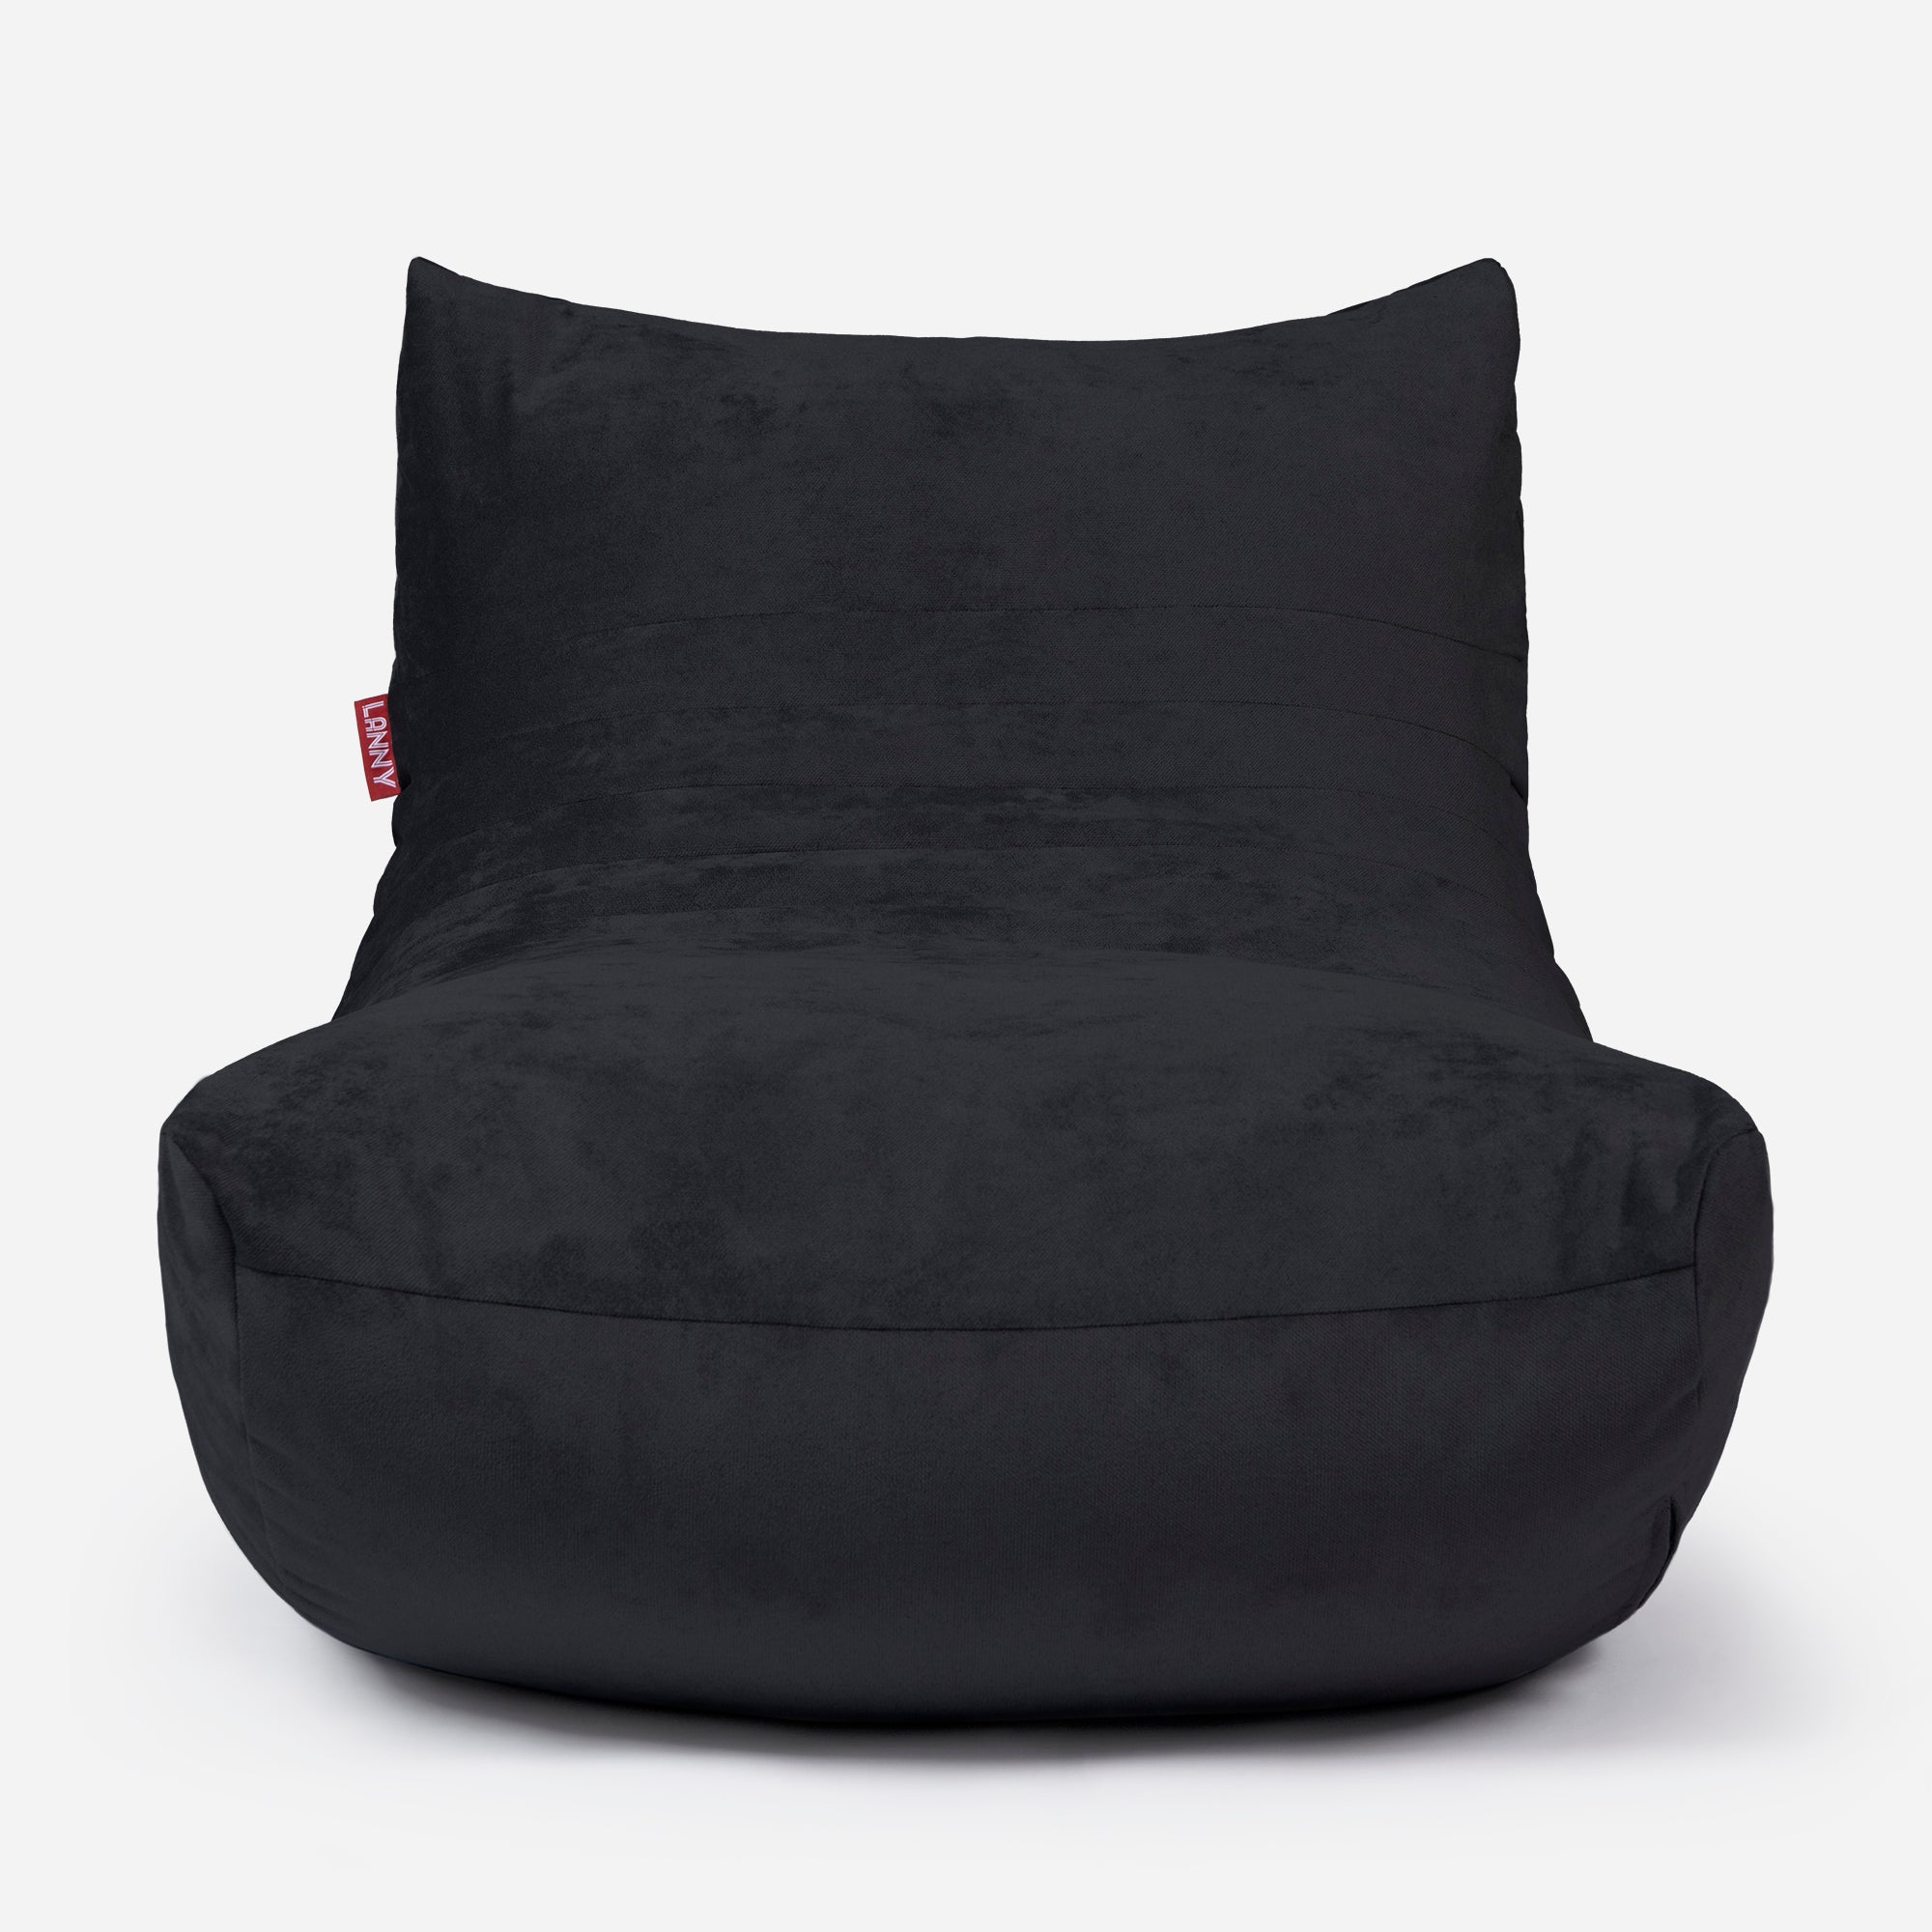 Curvy Aldo Black Bean Bag Chair